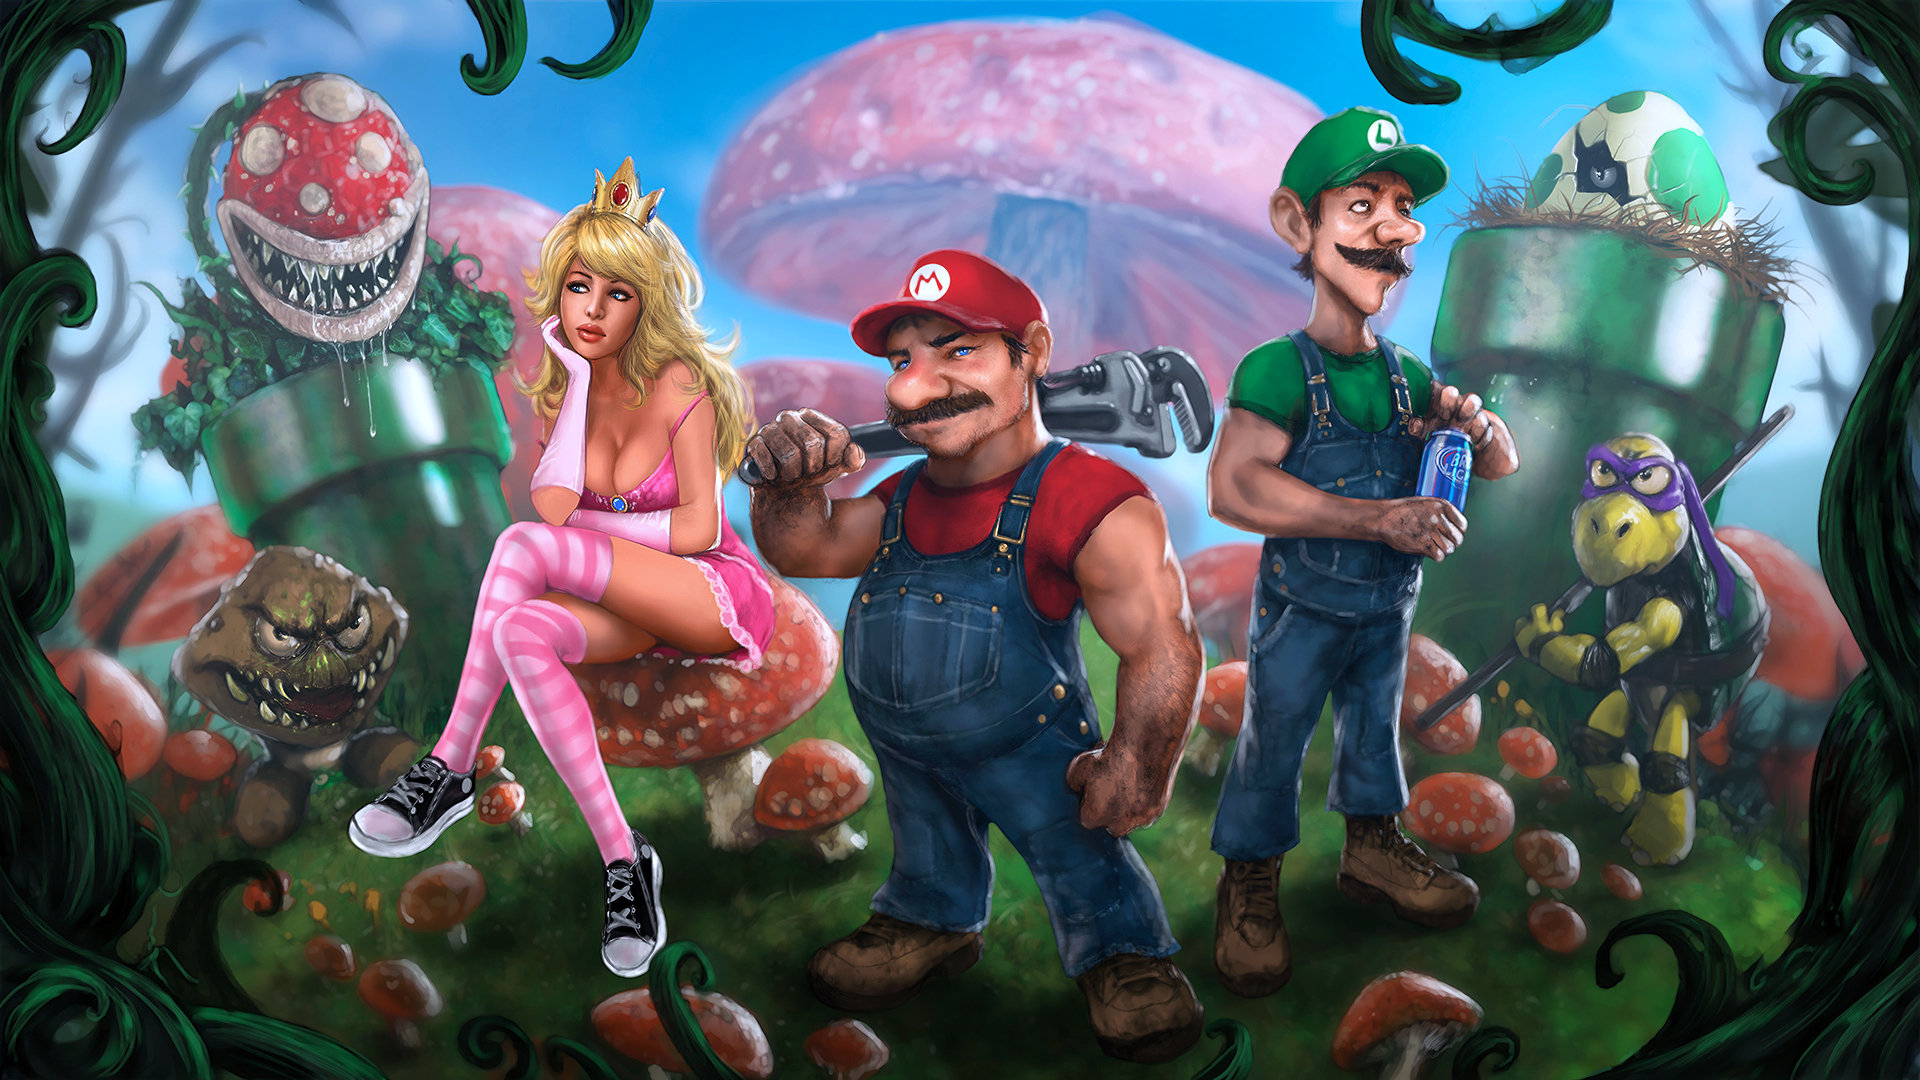 Mario new life